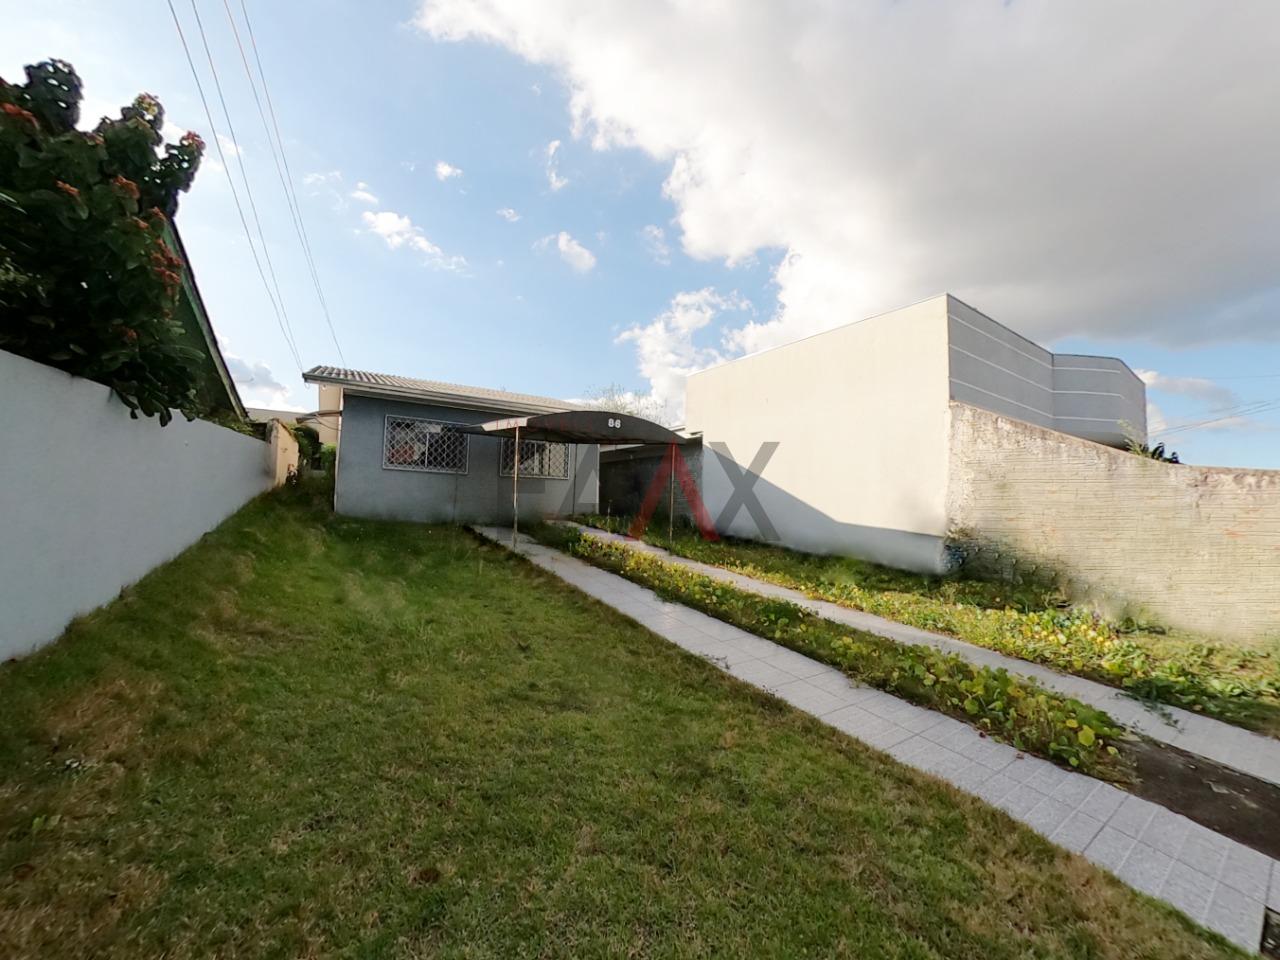 Casa com 3 dormitórios para locação,77.66 m², BONSUCESSO, GUARAPUAVA - PR